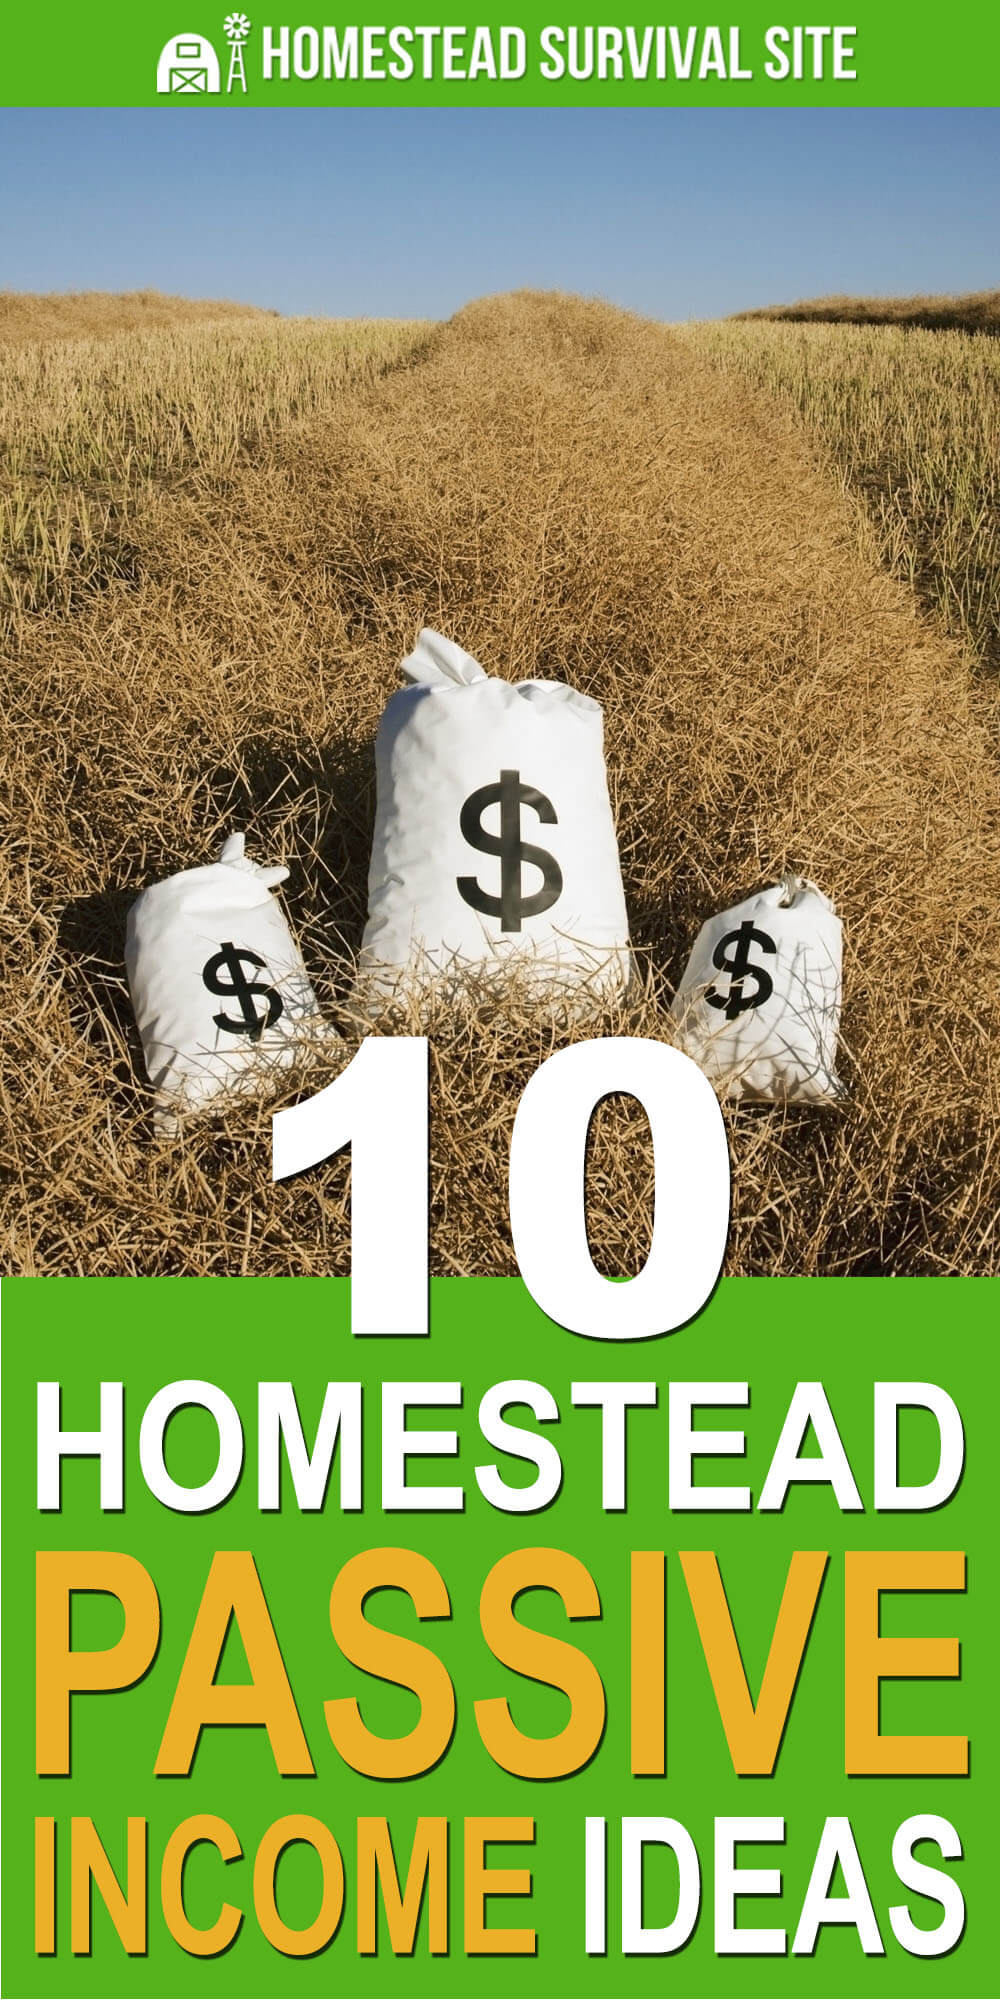 10 Homestead Passive Income Ideas